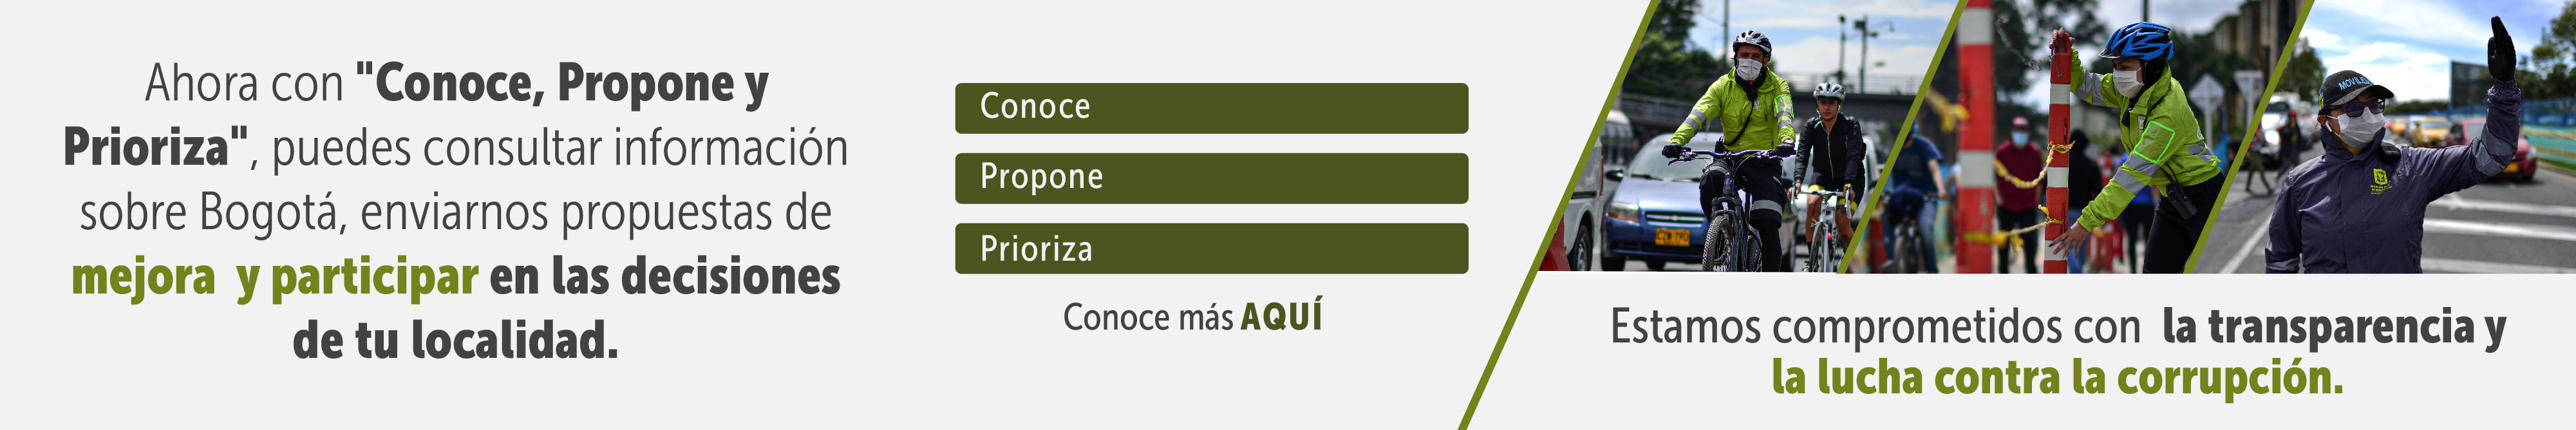 Aquí puede acceder a la información clave sibre Bogotá, Conoce, Propone y Prioriza